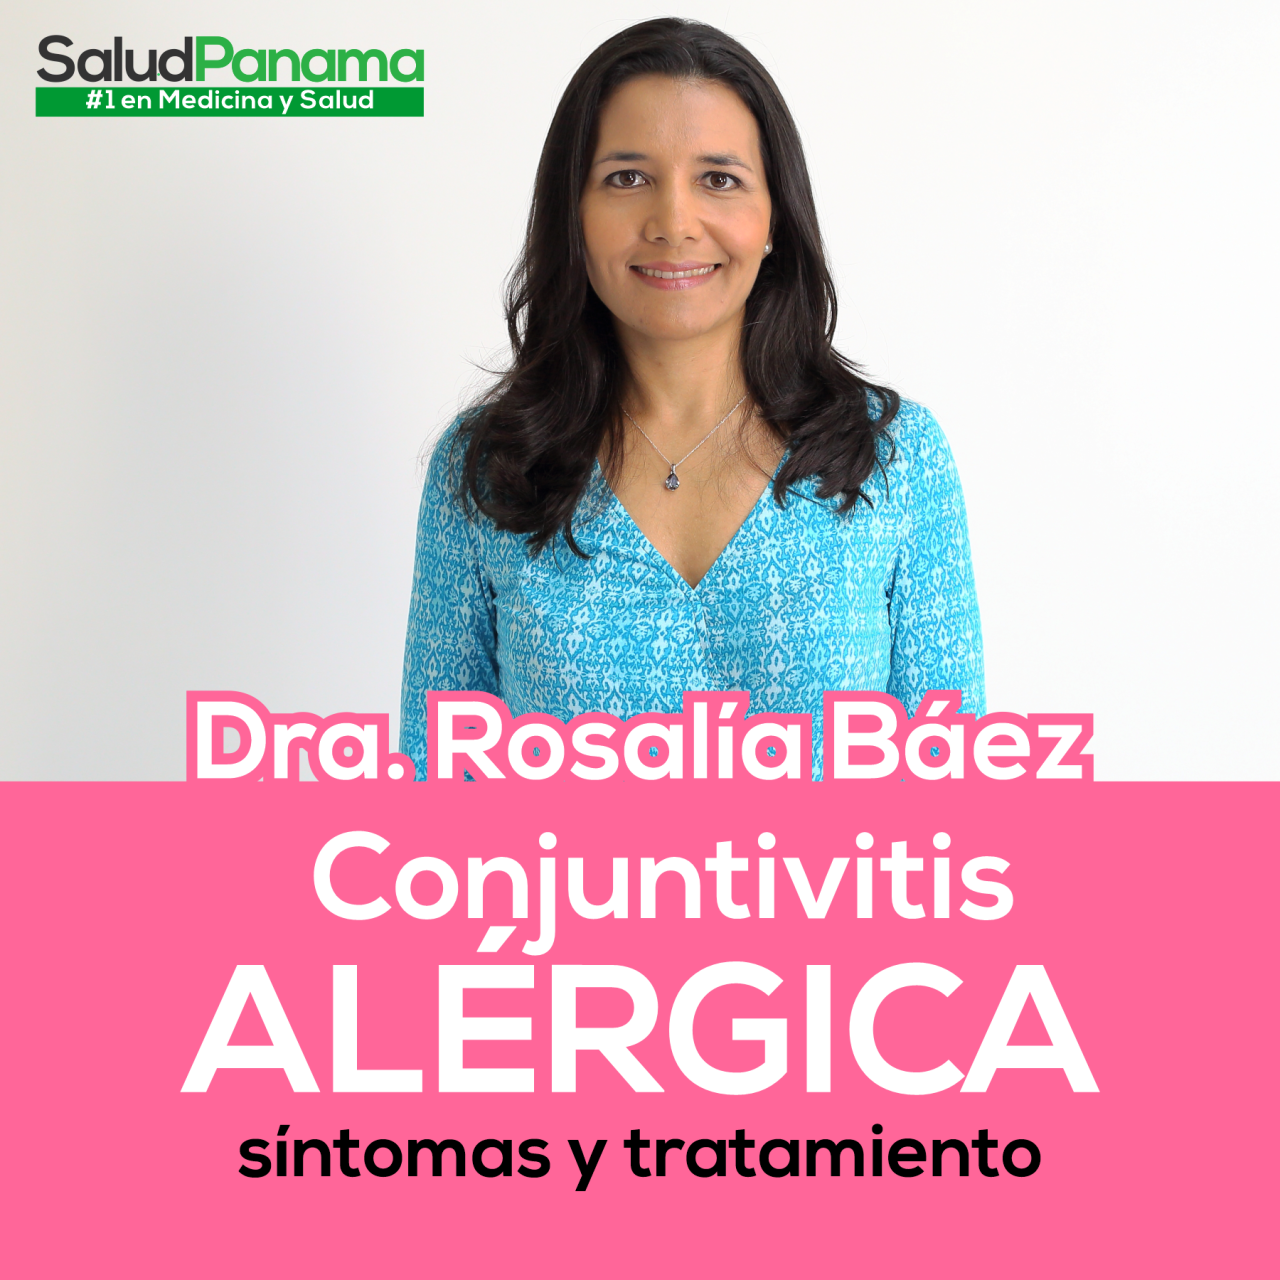 Conjuntivitis Alérgica, síntomas y tratamiento